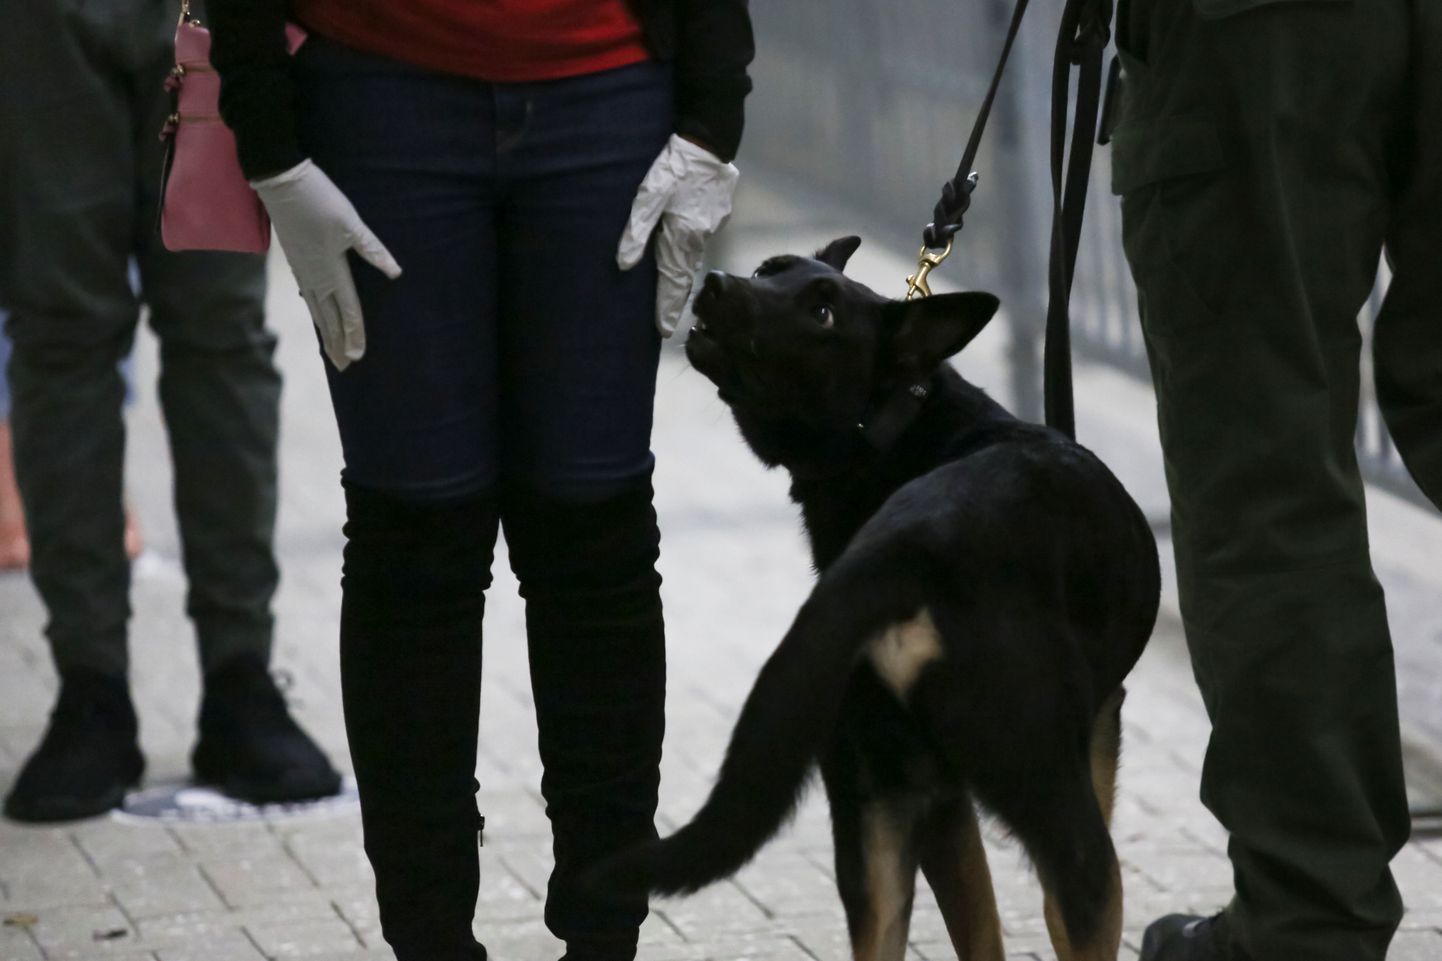 Koroonat tuvastama õppinud koer inimesi nuusutamas Ameerika lennujaamas.